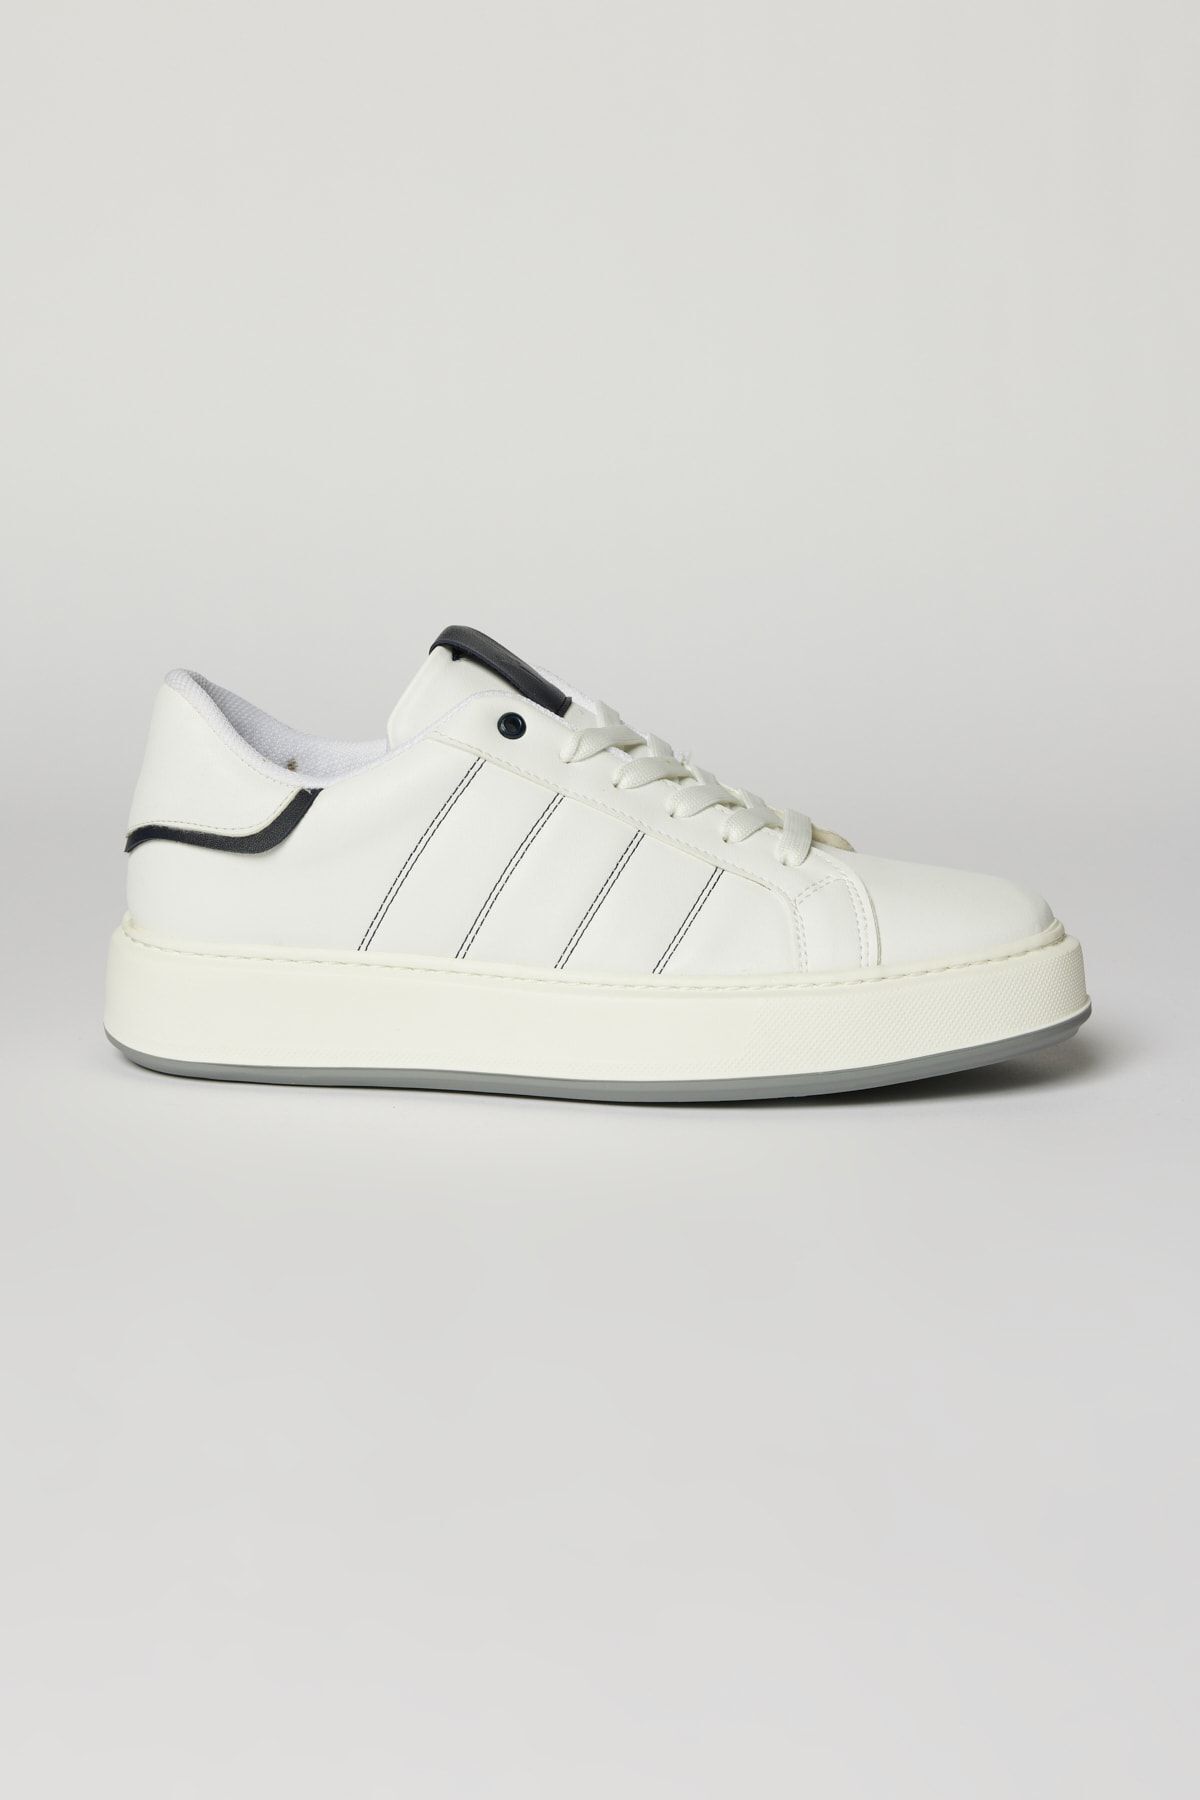 Altınyıldız Classics Erkek Beyaz-lacivert Rahat Taban Spor Sneaker Ayakkabı 4A2223200044